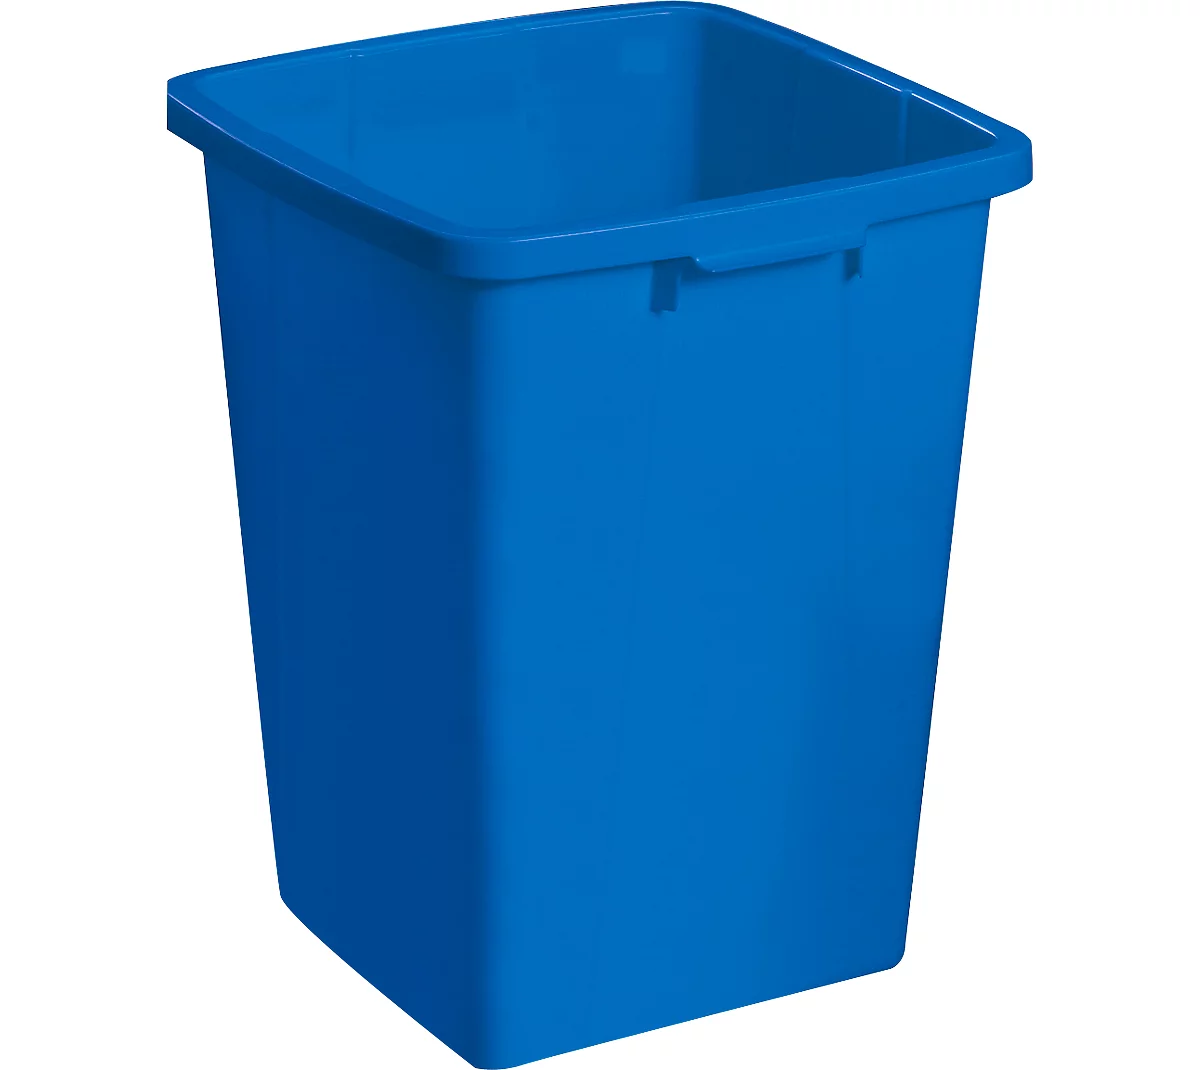 Abfallbehälter ohne Deckel, 90 Liter, blau